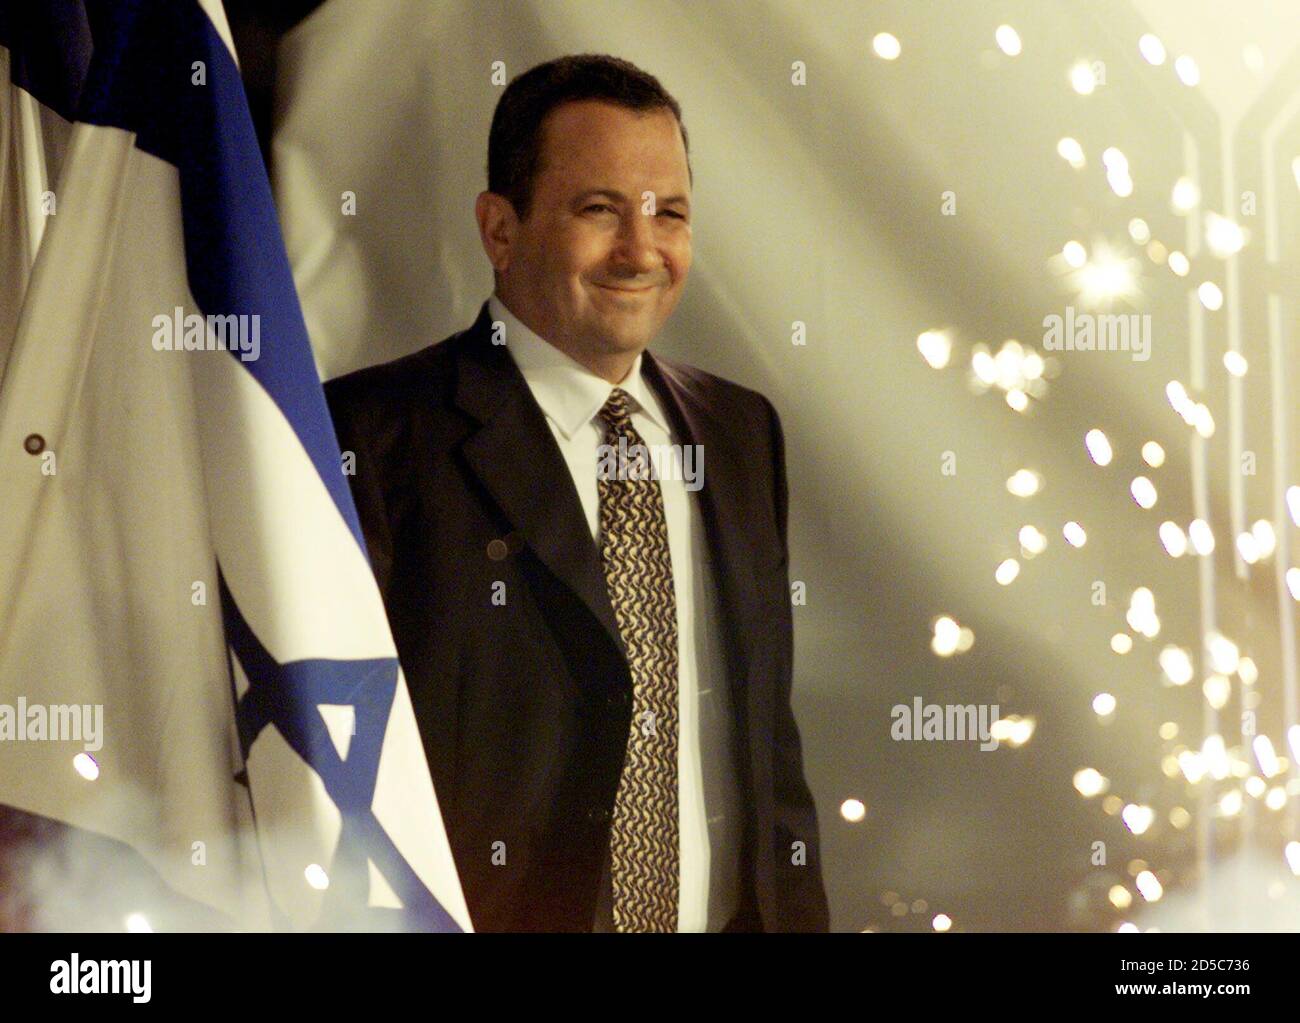 Ein lächelnder designierter Premierminister Ehud Barak geht auf der Bühne inmitten von Flaggen und Wunderkerzen, als er am 23. Mai zu einer festlichen Wahlsiegerkundgebung für seine eine-Israel-Partei eintrifft. Barak gewann bei den Parlamentswahlen in der letzten Woche einen Erdrutschsieg über den einliegenden Premierminister Benjamin Netanjahu und beginnt nun mit der Bildung einer Regierung, die, wie er sagte, auf breiter Basis sein und alle Aspekte der israelischen Gesellschaft einschließen sollte. Levy ist ein Kandidat für den Erhalt des Außenministerportfolios in Baraks Regierung. JWH Stockfoto